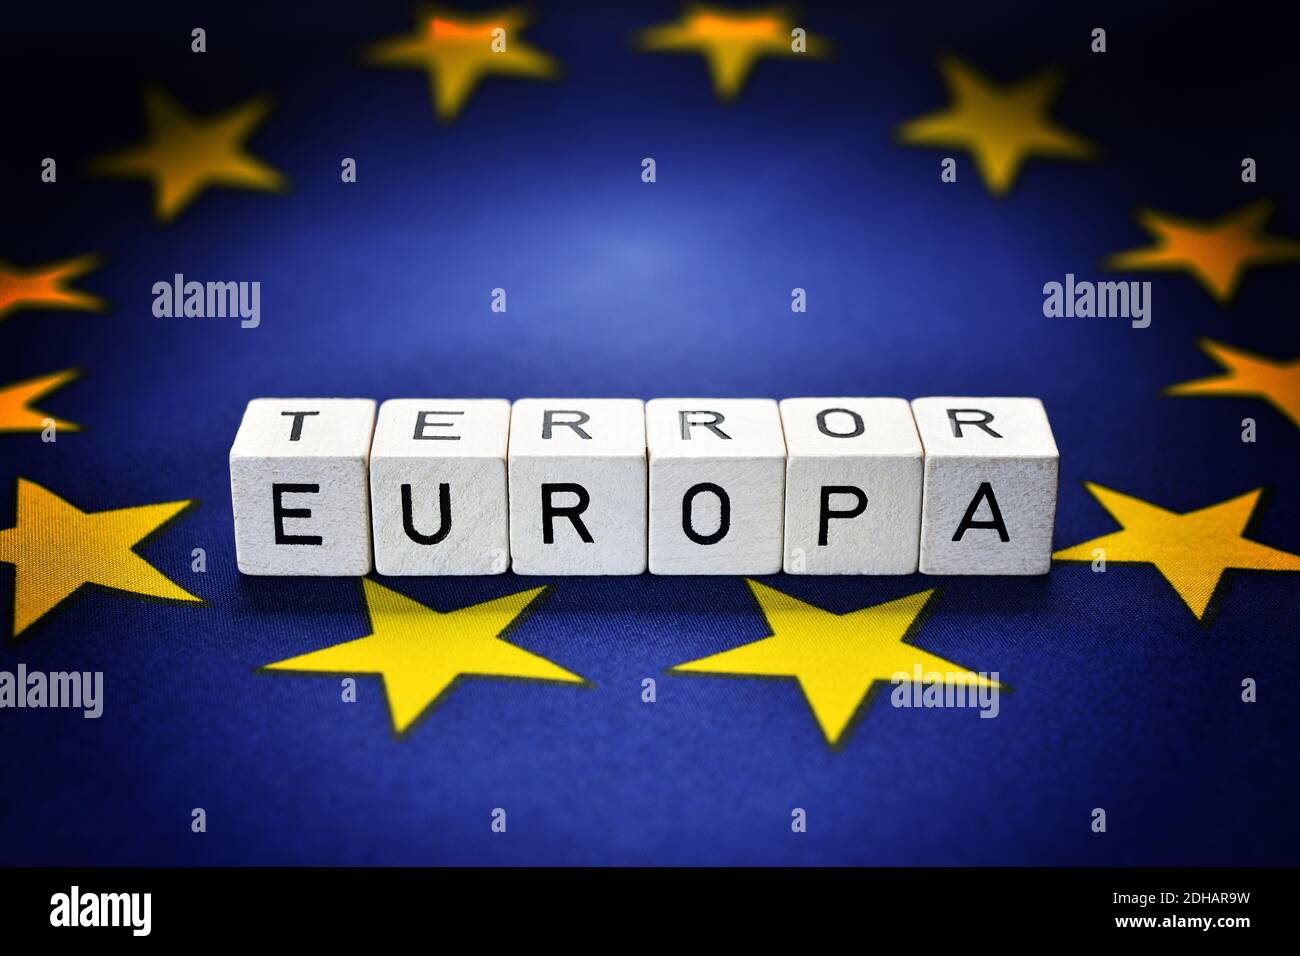 FOTOMONTAGE, Buchstaben bilden die Schriftzüge Europa und Terror auf einer EU-Fahne, Terrorgefahr in Europa Foto de stock